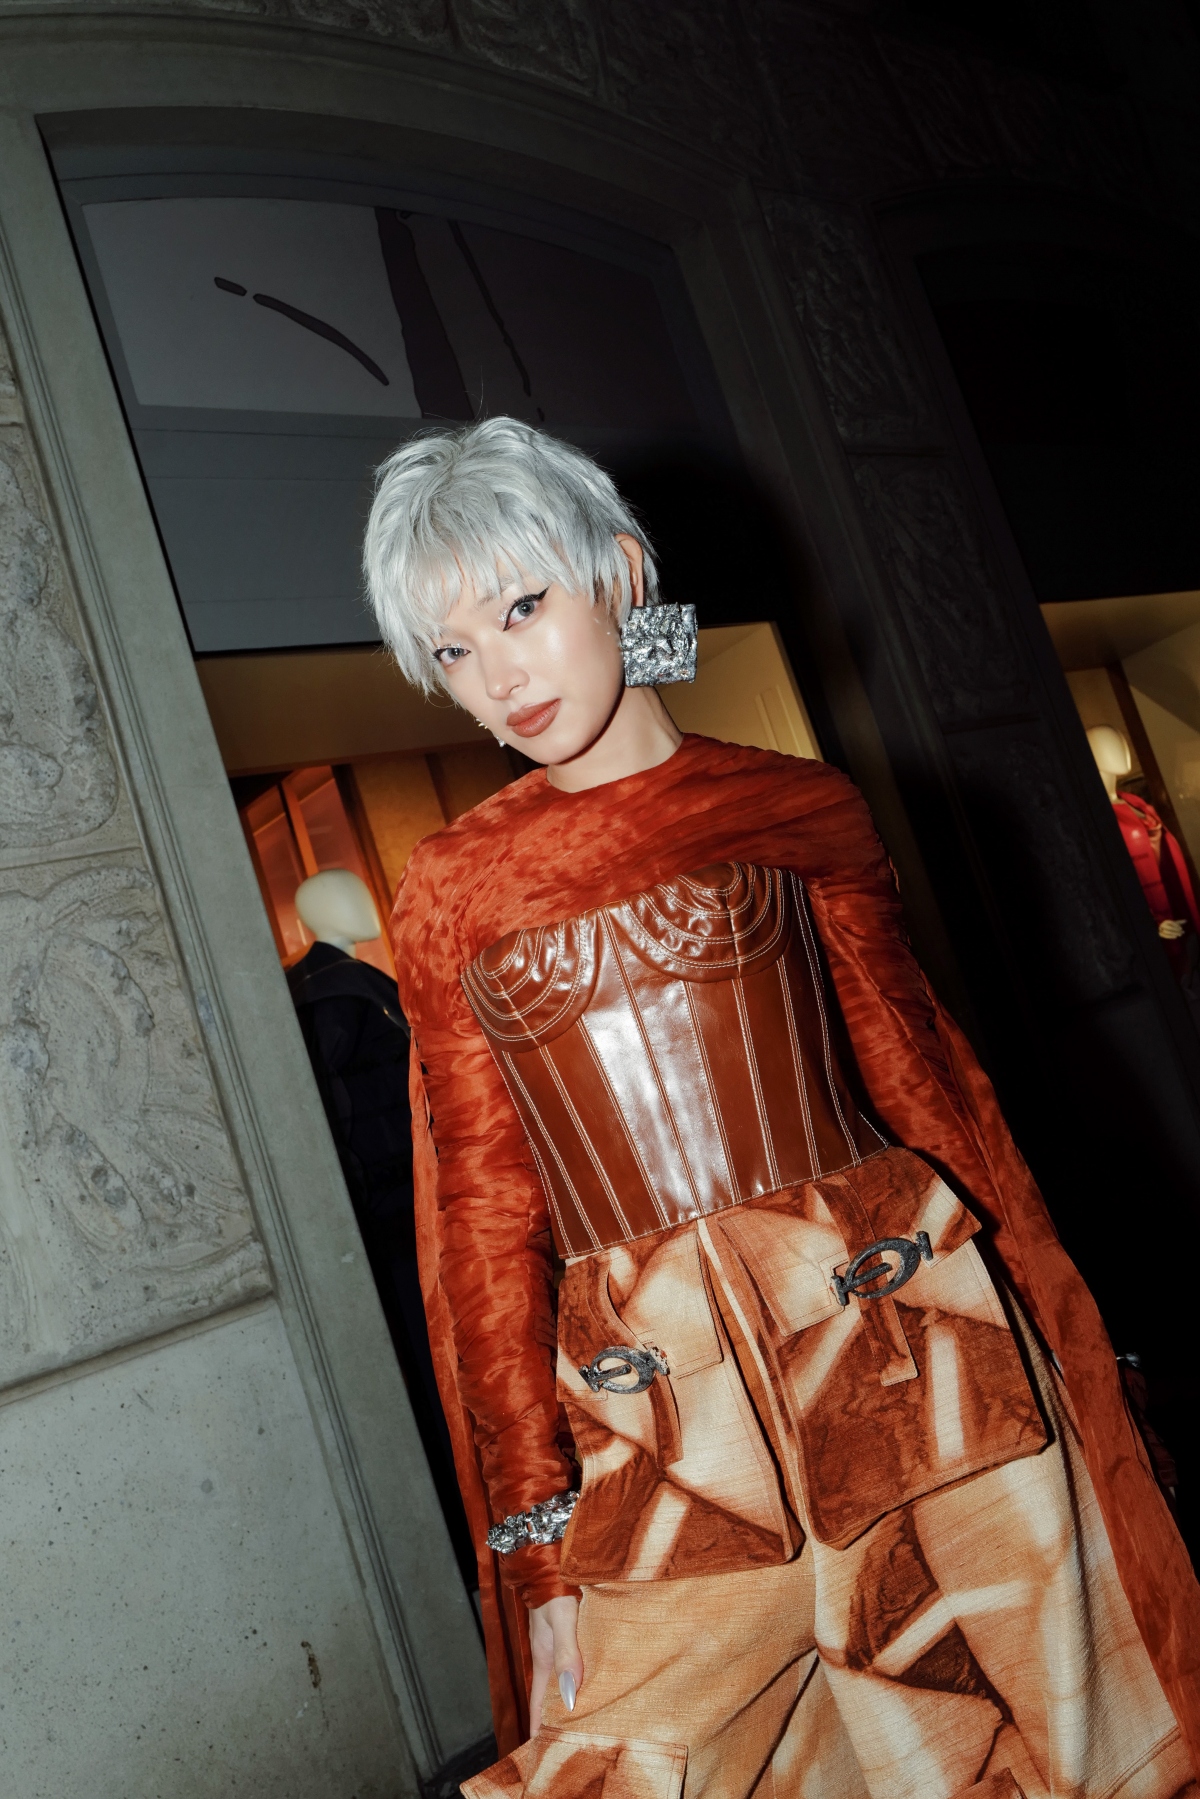 Châu Bùi diện trang phục của NTK Việt Nam trong sự kiện mở màn Milan Fashion Week